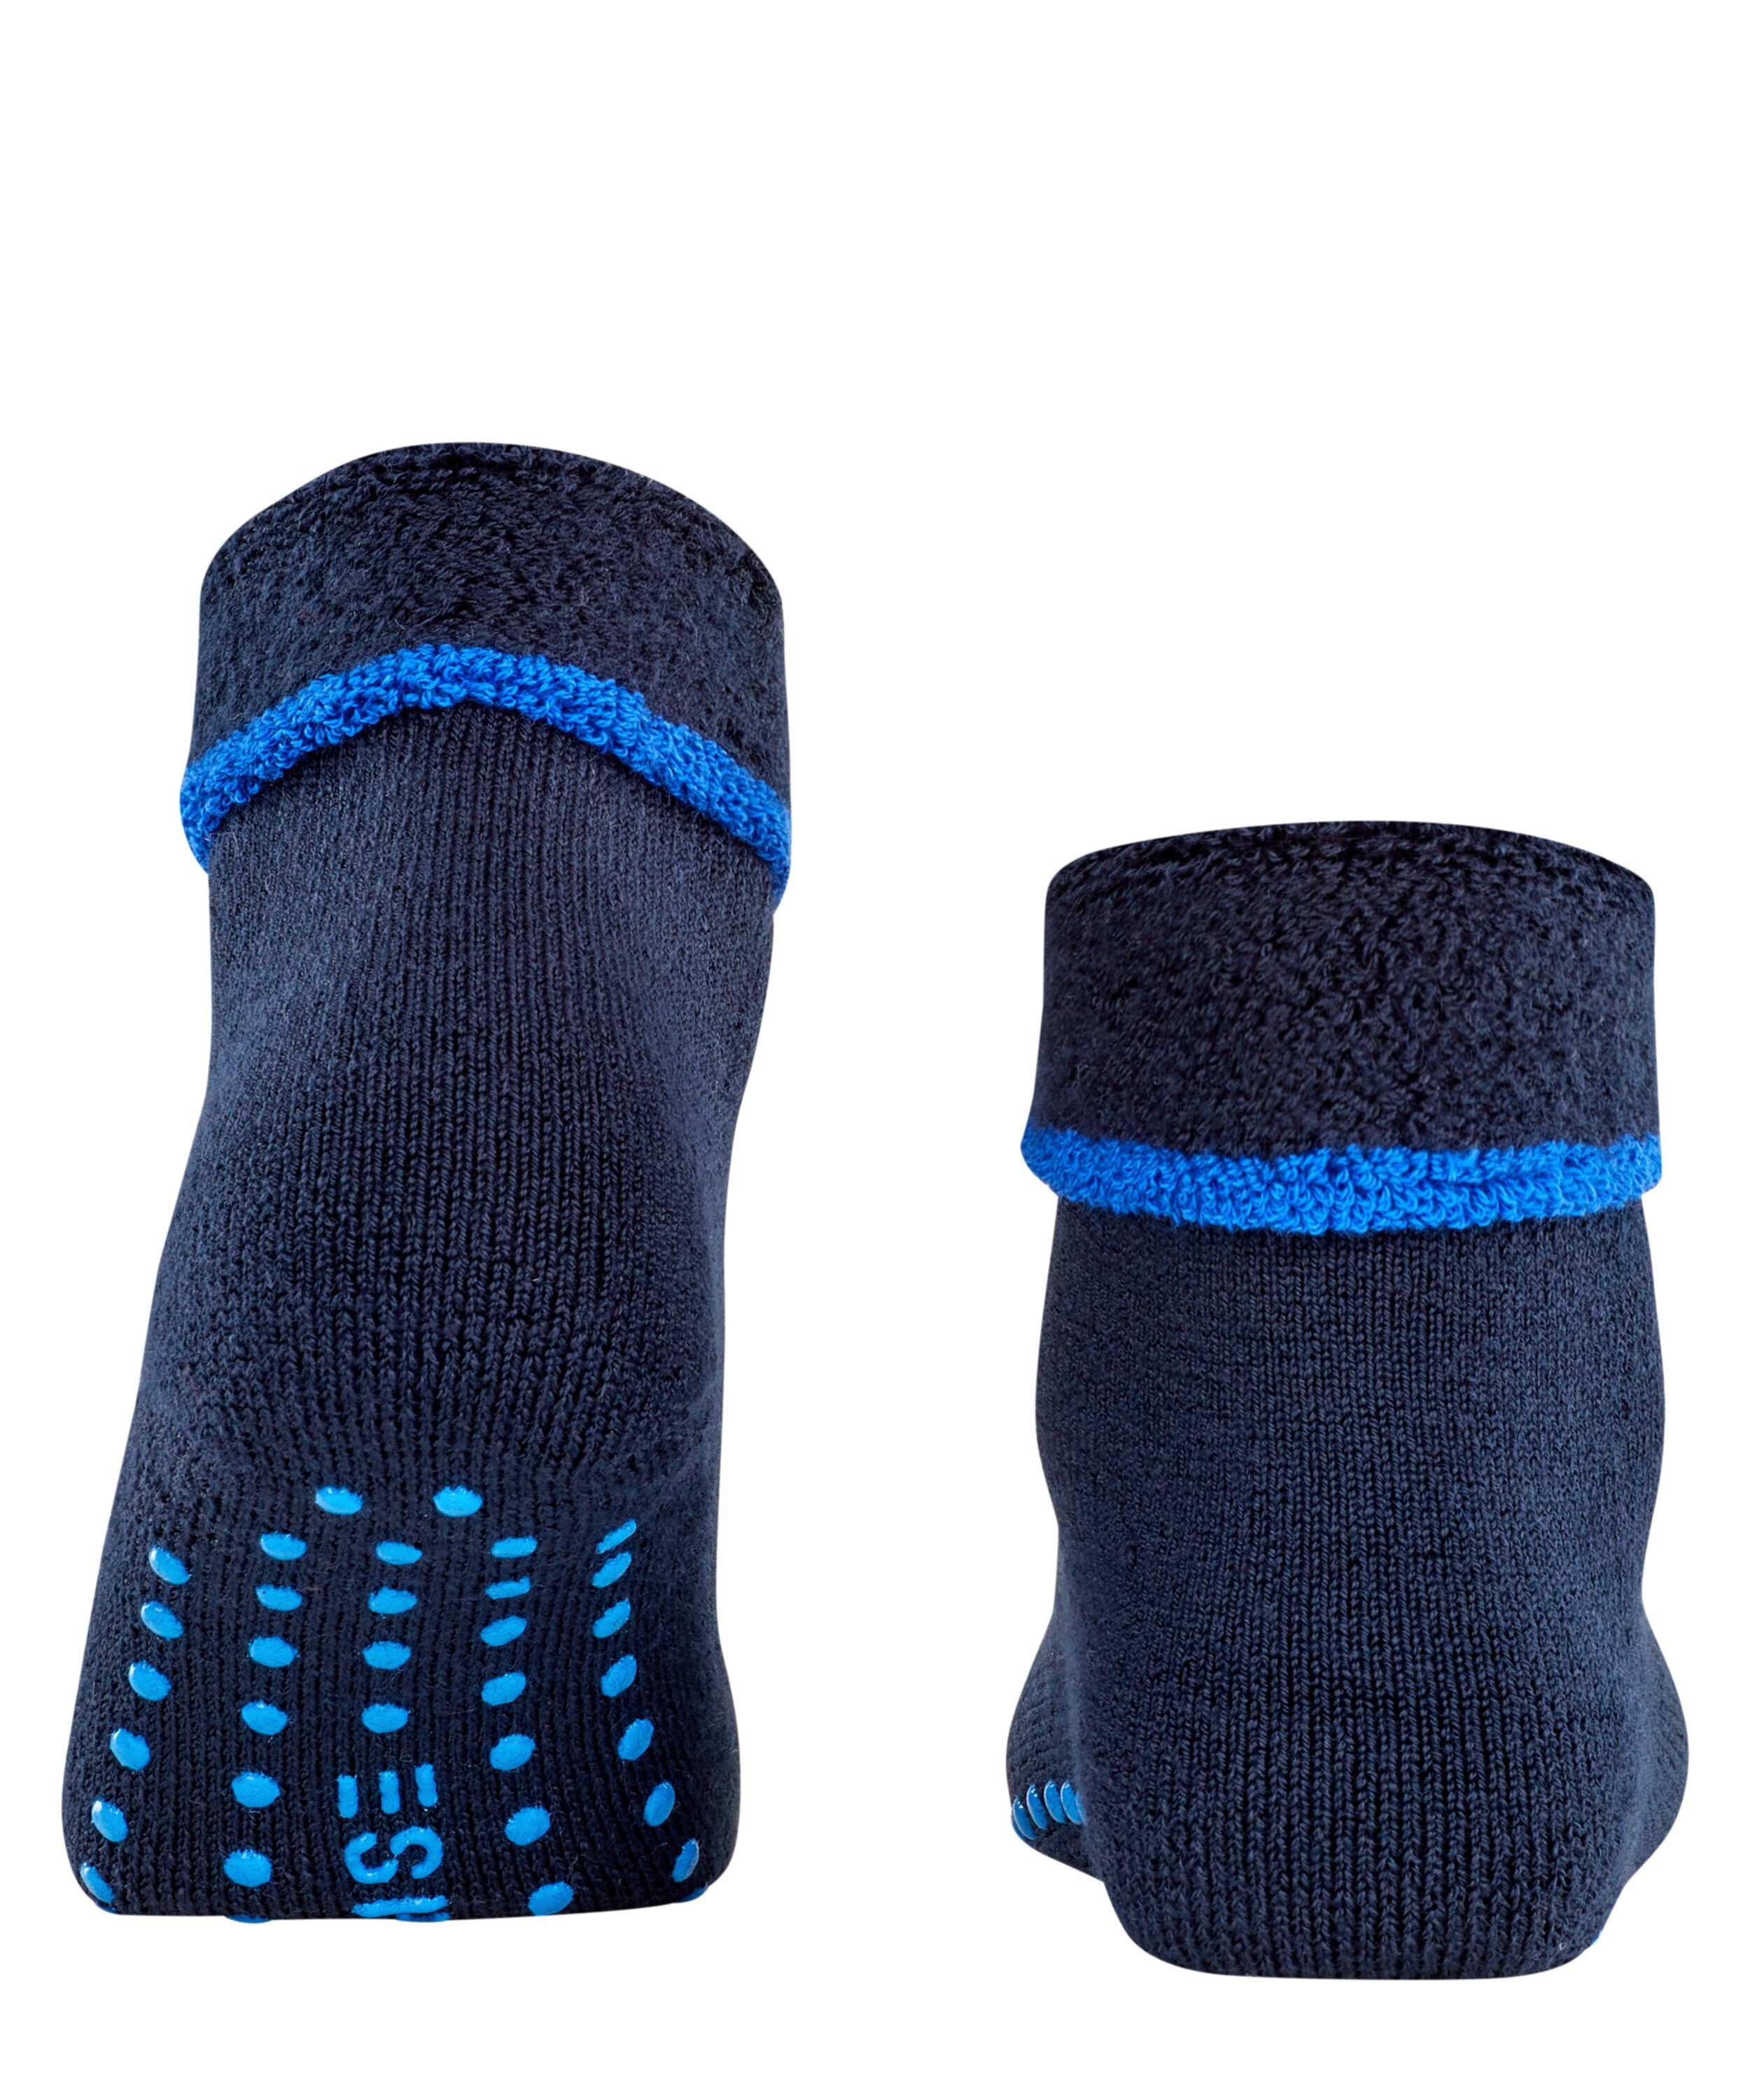 (6375) Cozy dark navy Socken Esprit (1-Paar)